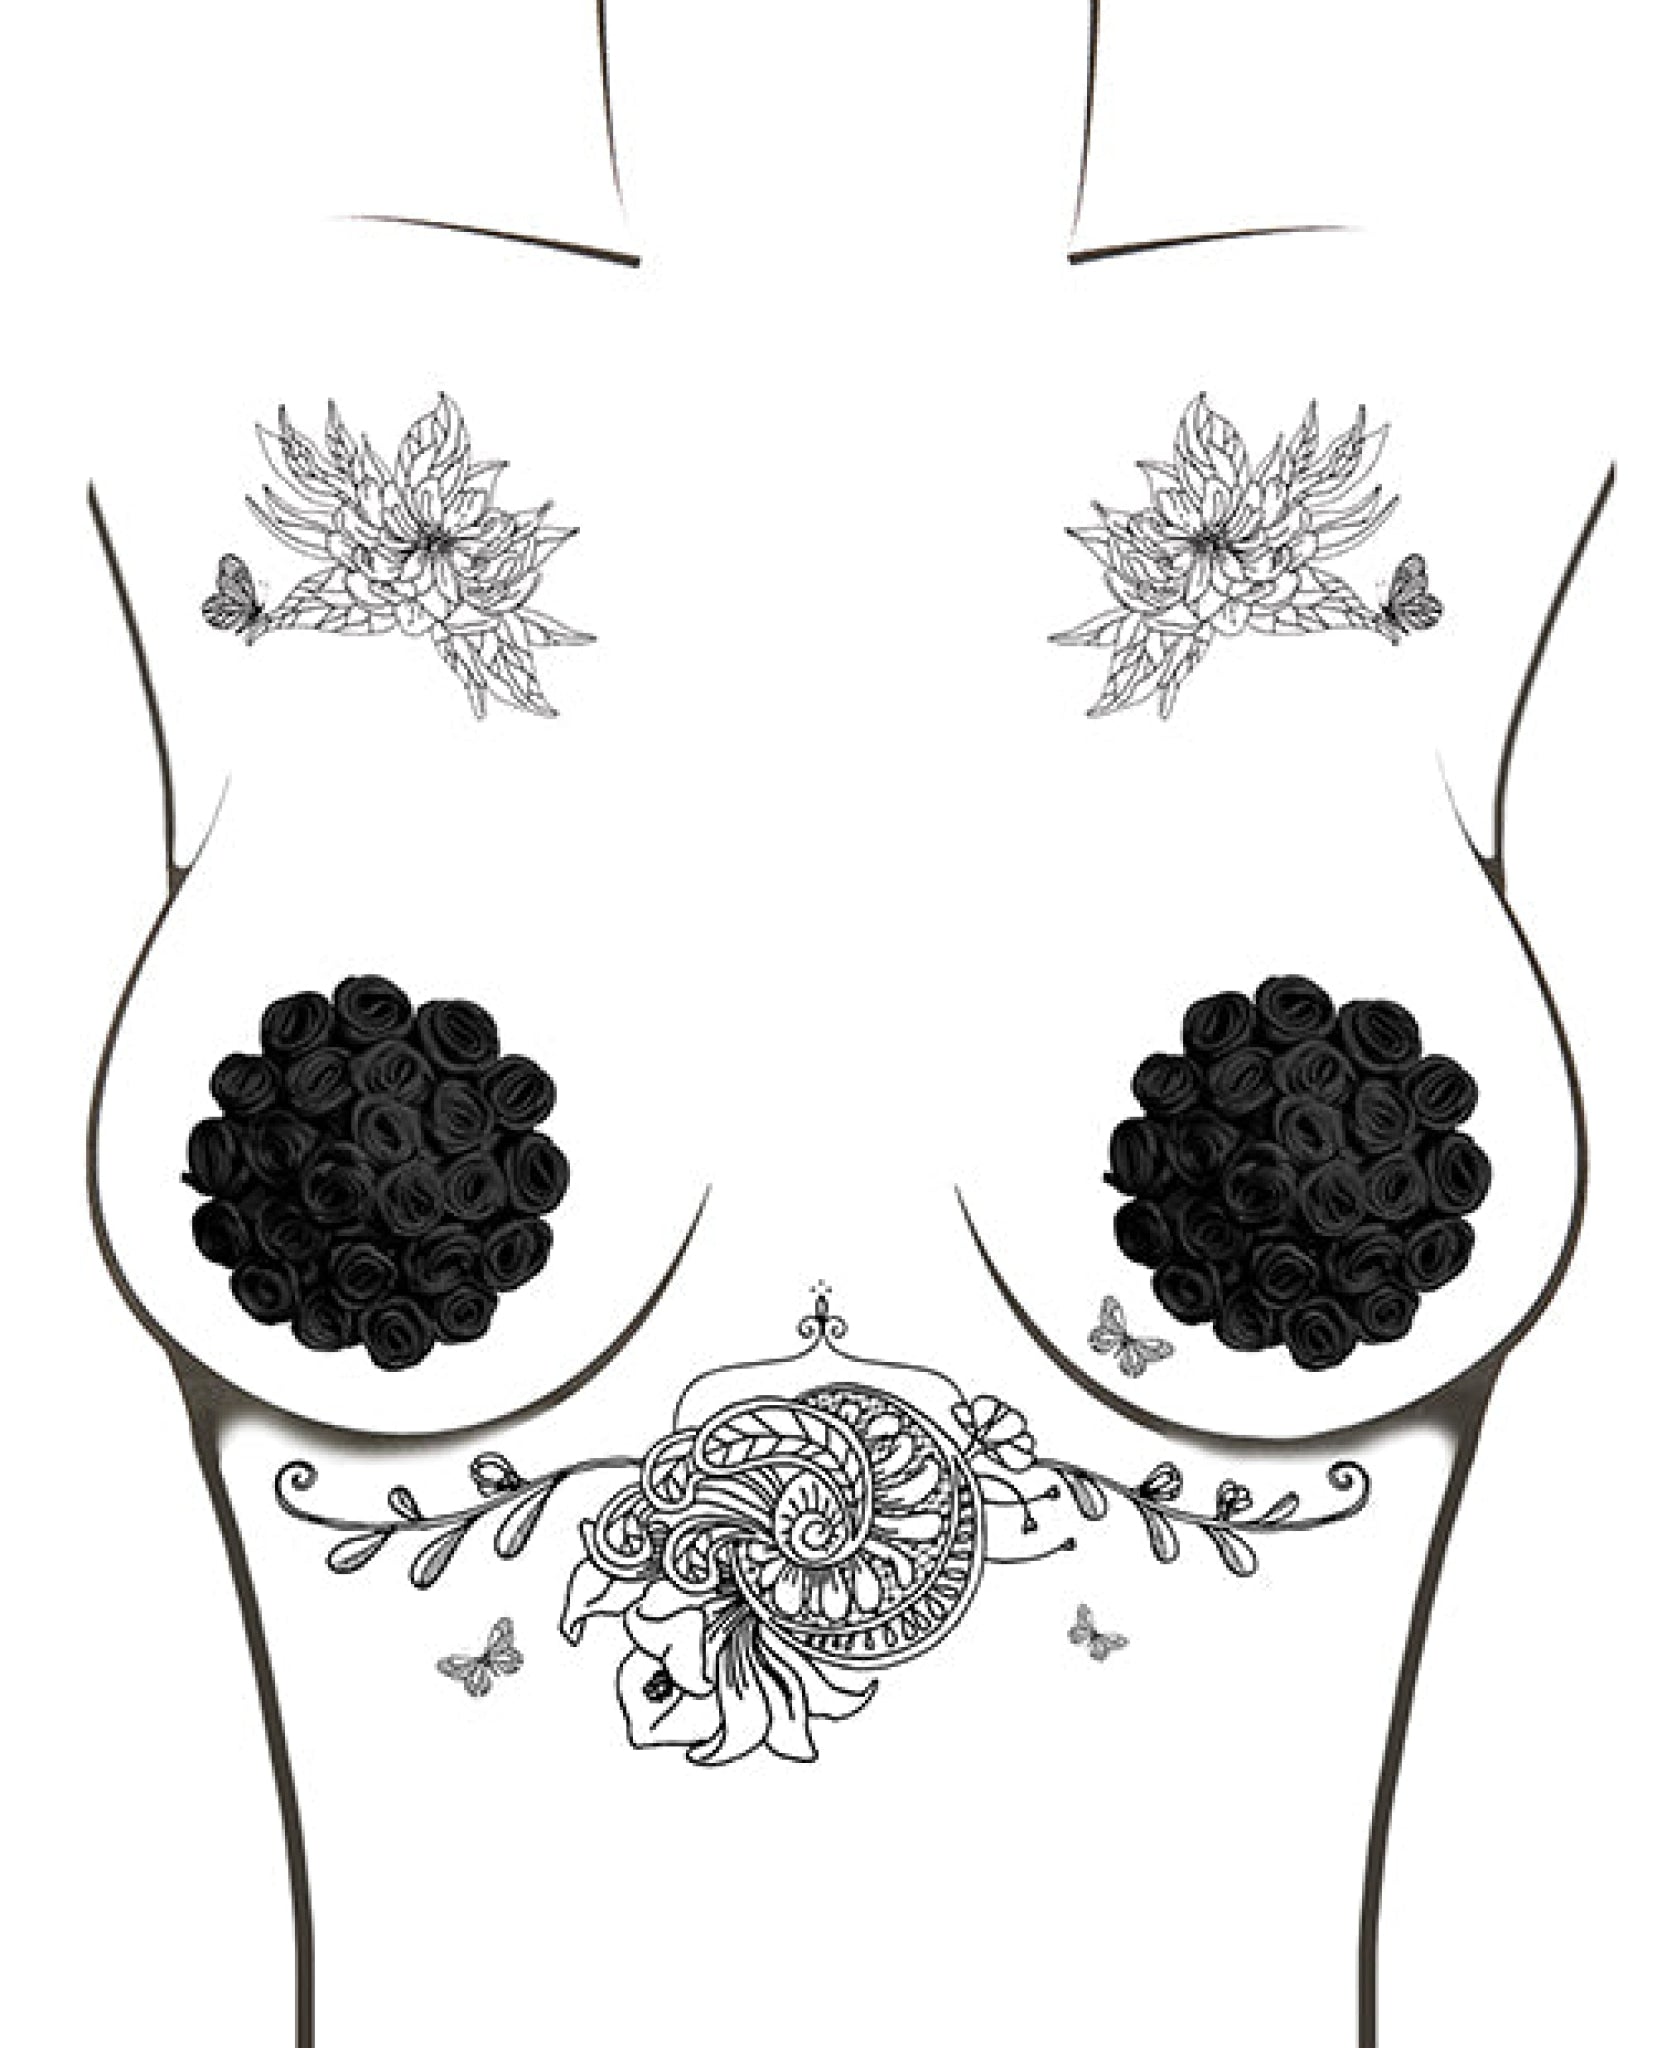 Neva Nude Burlesque Nightfall Roses Reusable Silicone Pasties - Black O-s Neva Nude